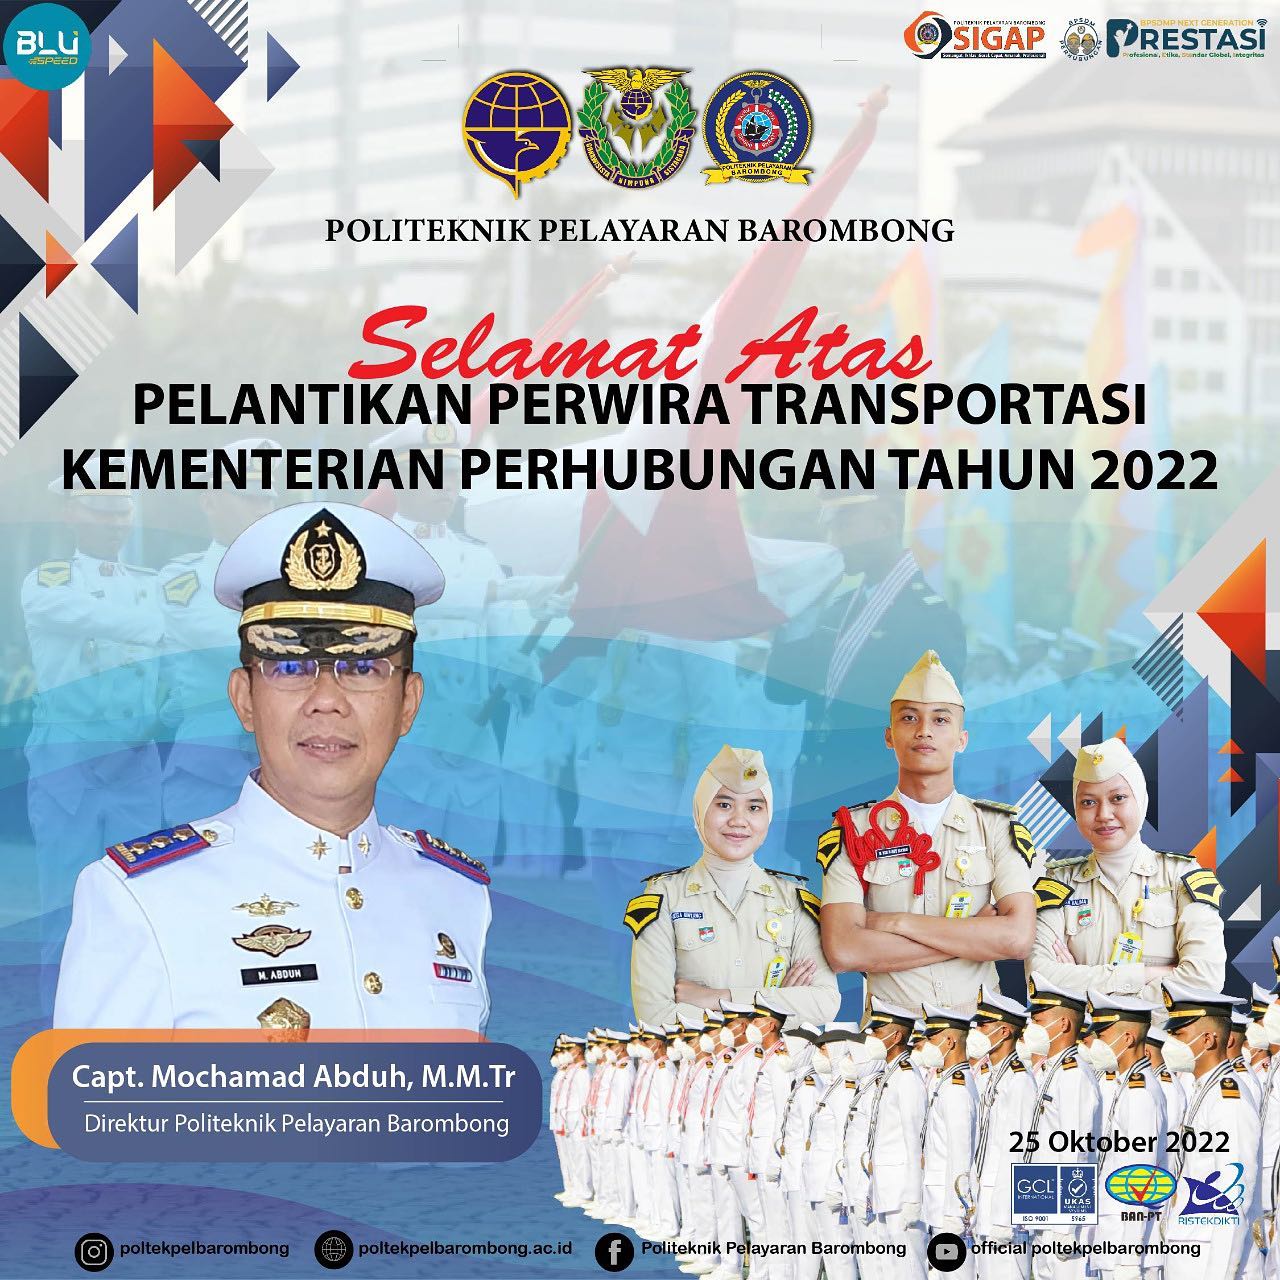 You are currently viewing Direktur dan Civitas akademika Politeknik Pelayaran Barombong mengucapkan selamat dan sukses atas Pelantikan Perwira Transportasi Kementerian Perhubungan Tahun 2022